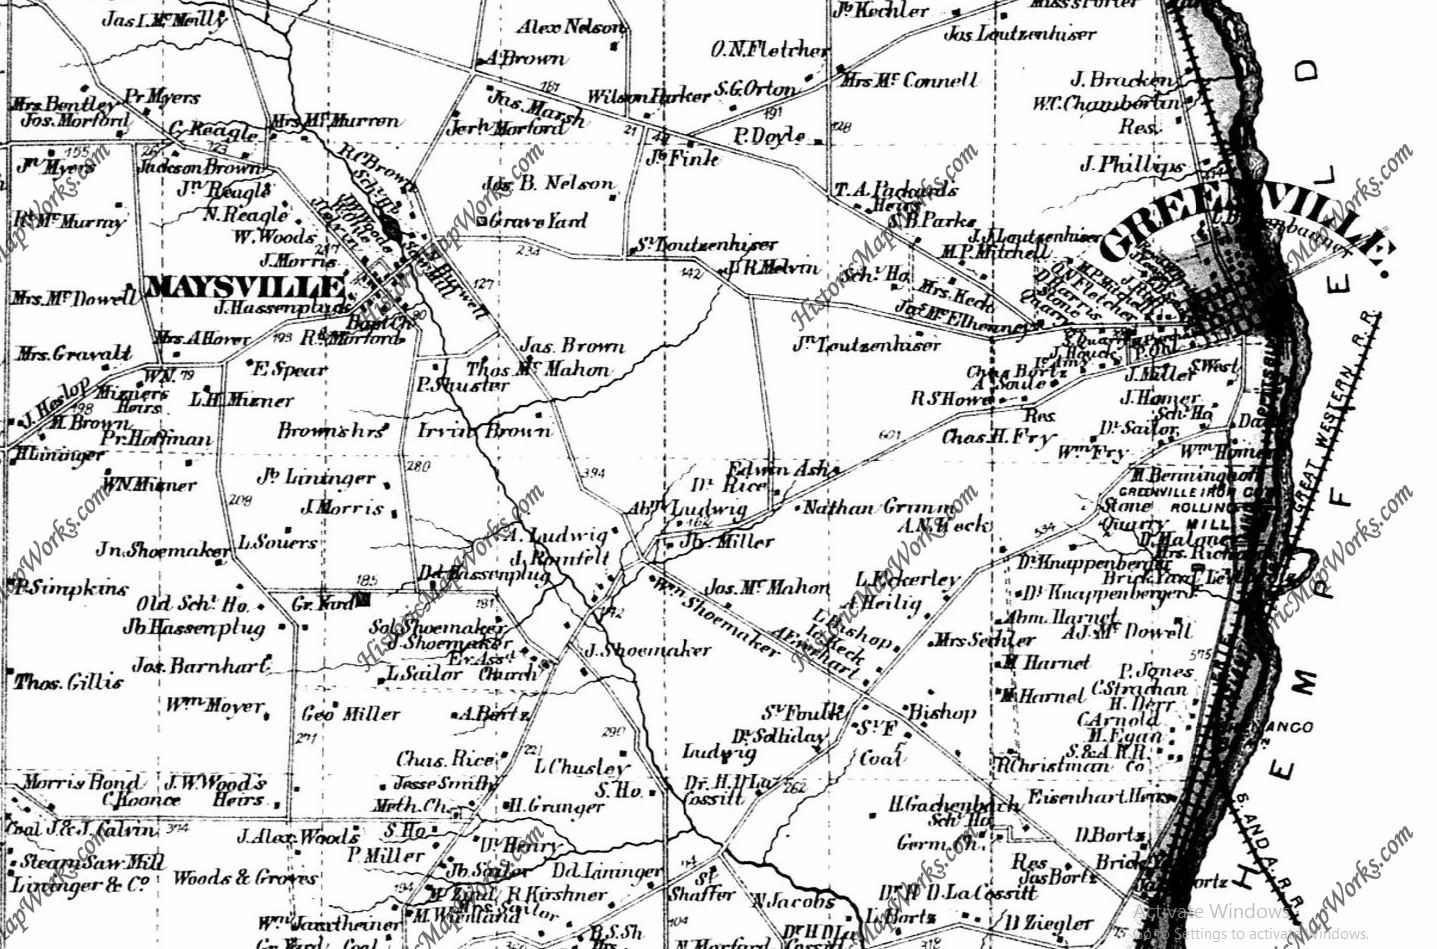 West Salem PA showing JW Woods farm in 1873